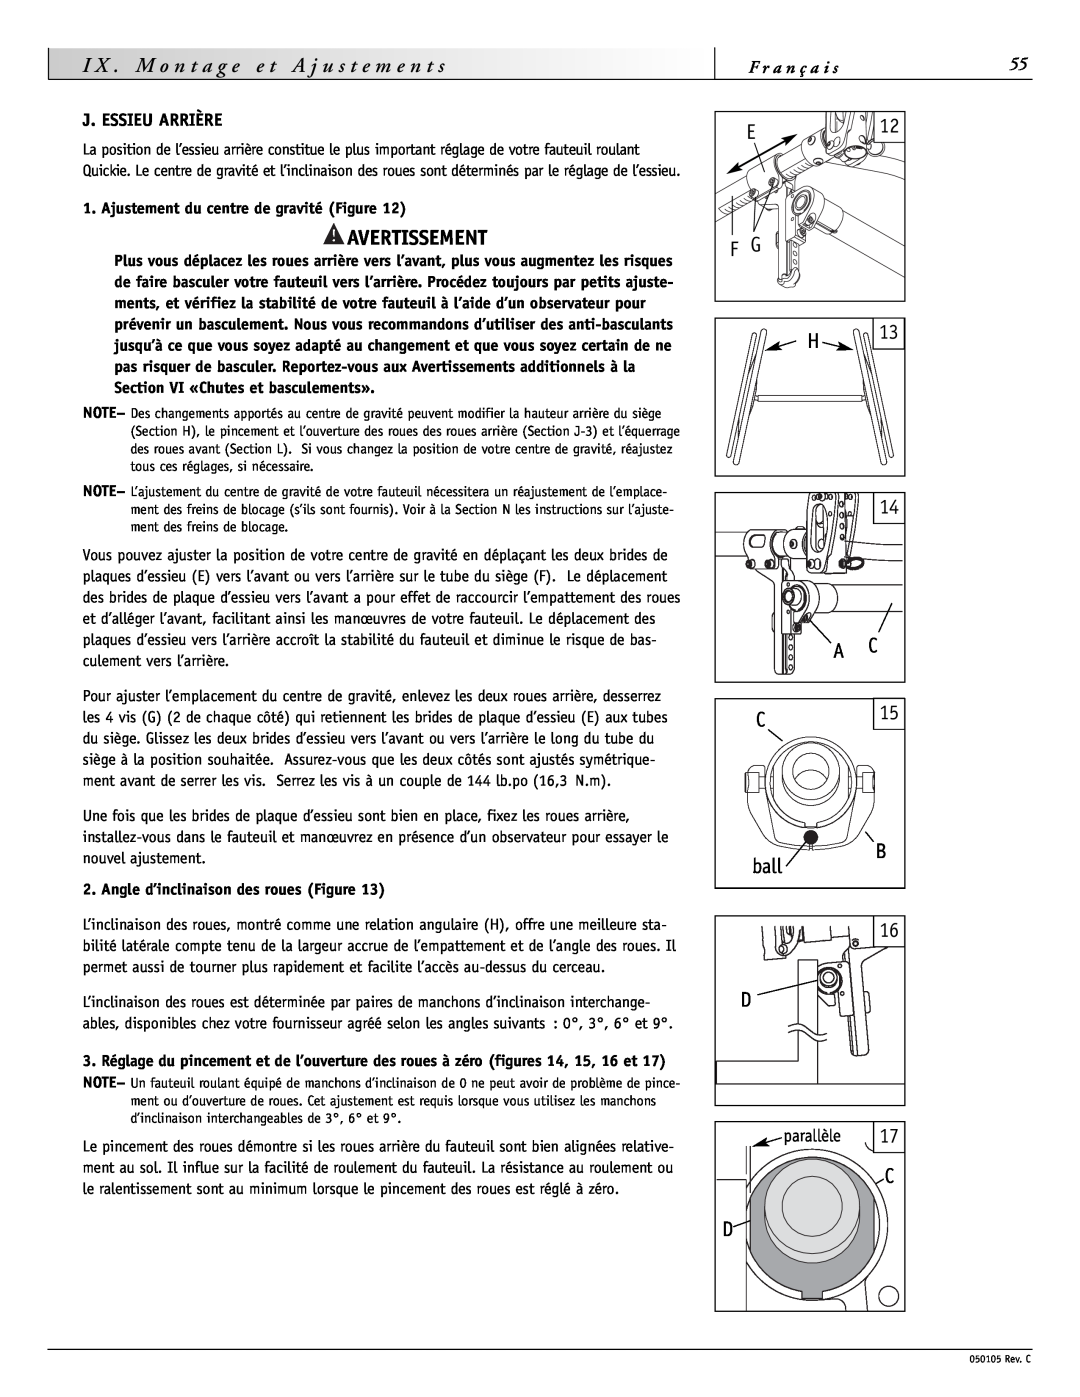 Sunrise Medical GT instruction manual J. Essieu Arrière, Avertissement, parallèle 